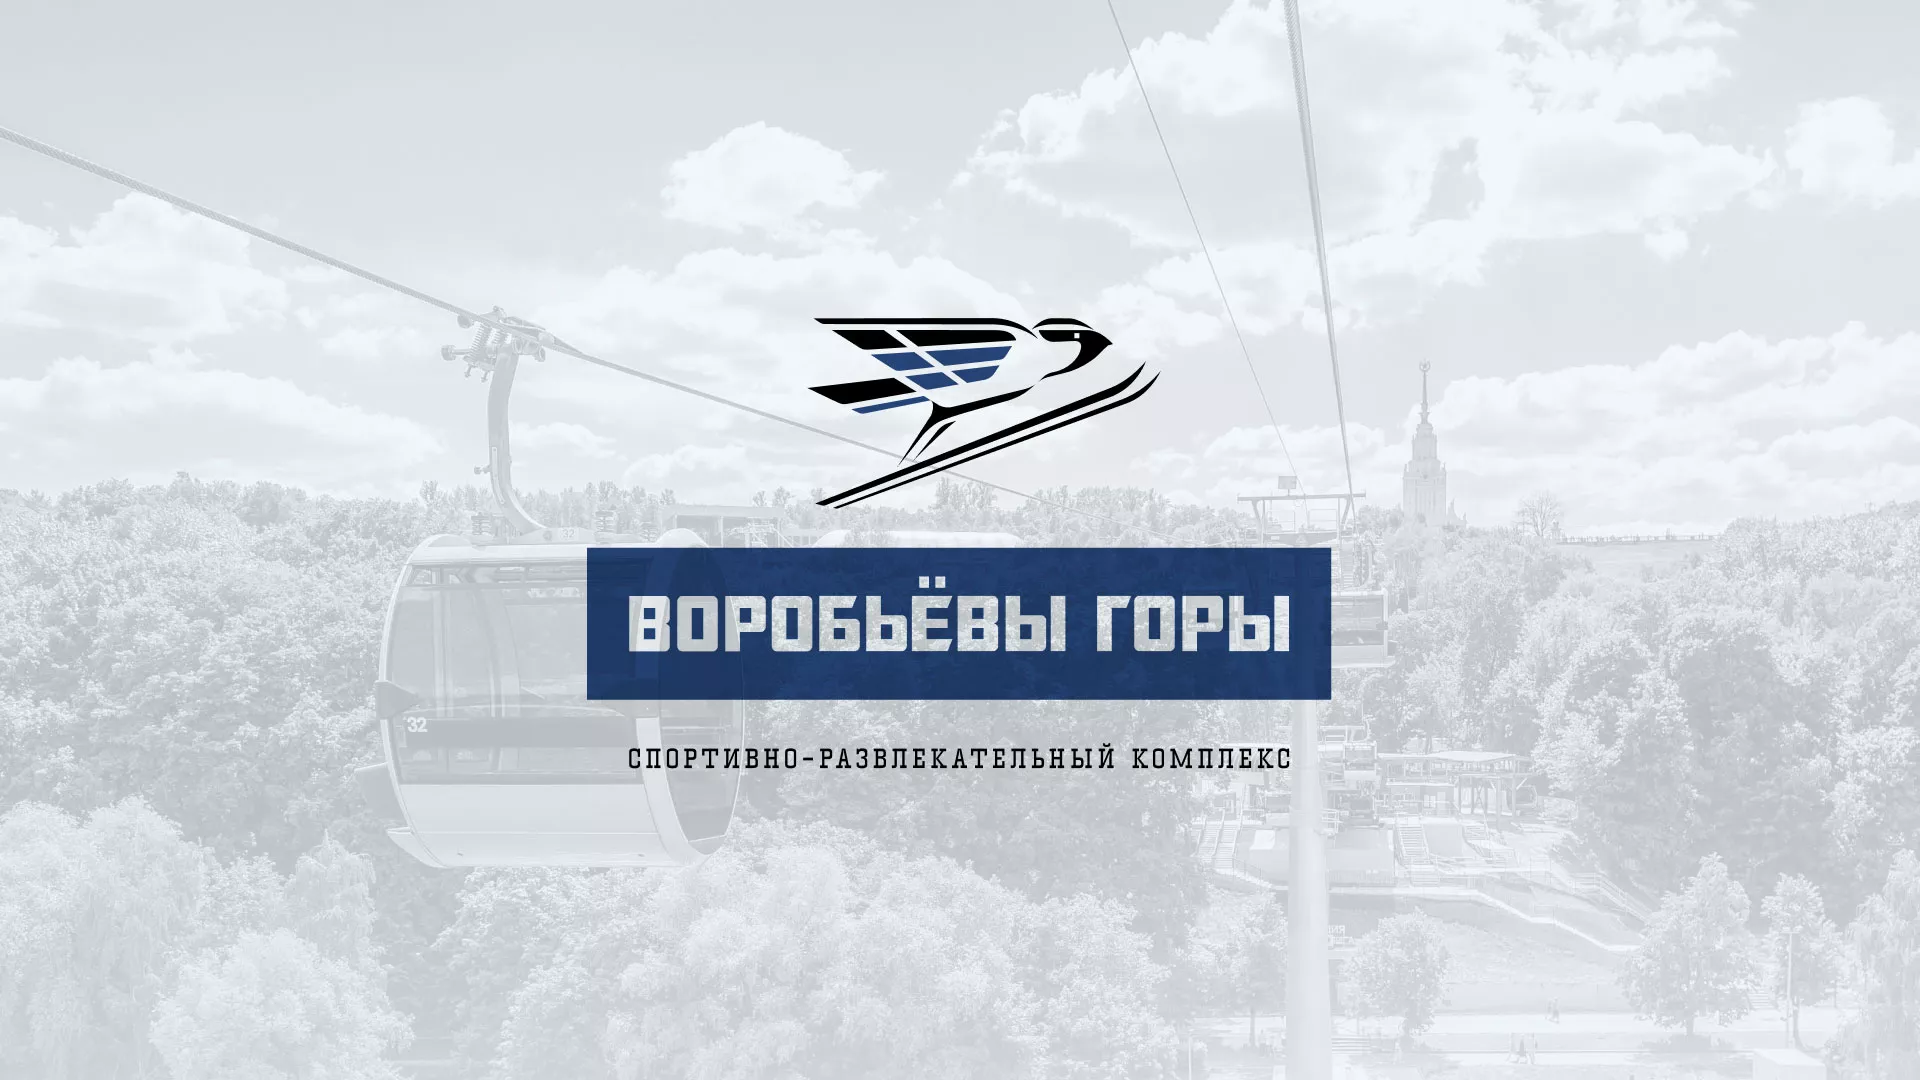 Разработка сайта в Волоколамске для спортивно-развлекательного комплекса «Воробьёвы горы»